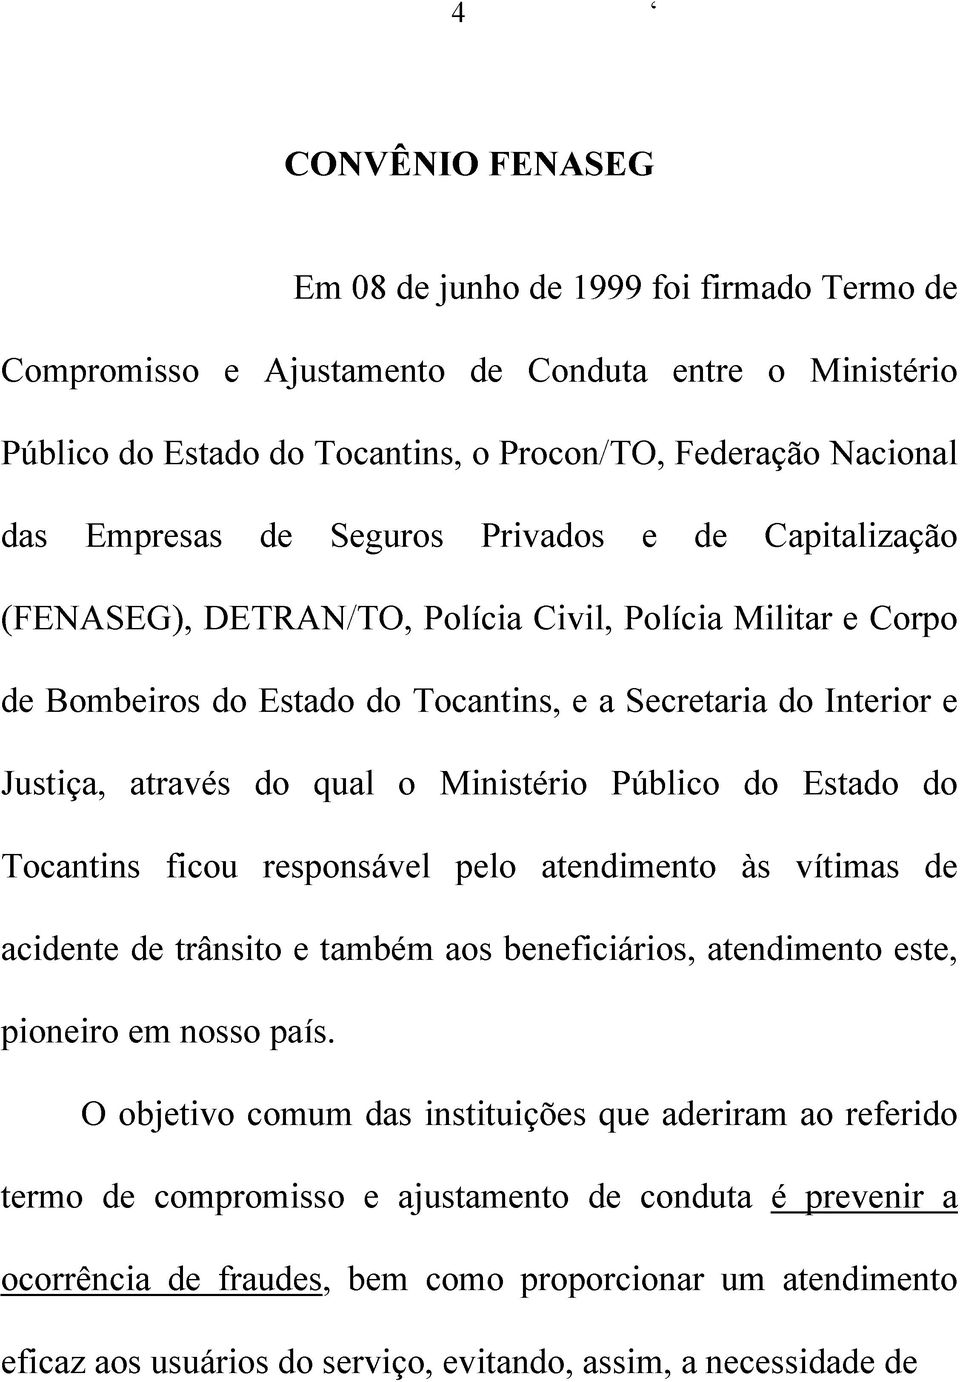 Ministério Público do Estado do Tocantins ficou responsável pelo atendimento às vítimas de acidente de trânsito e também aos beneficiários, atendimento este, pioneiro em nosso país.